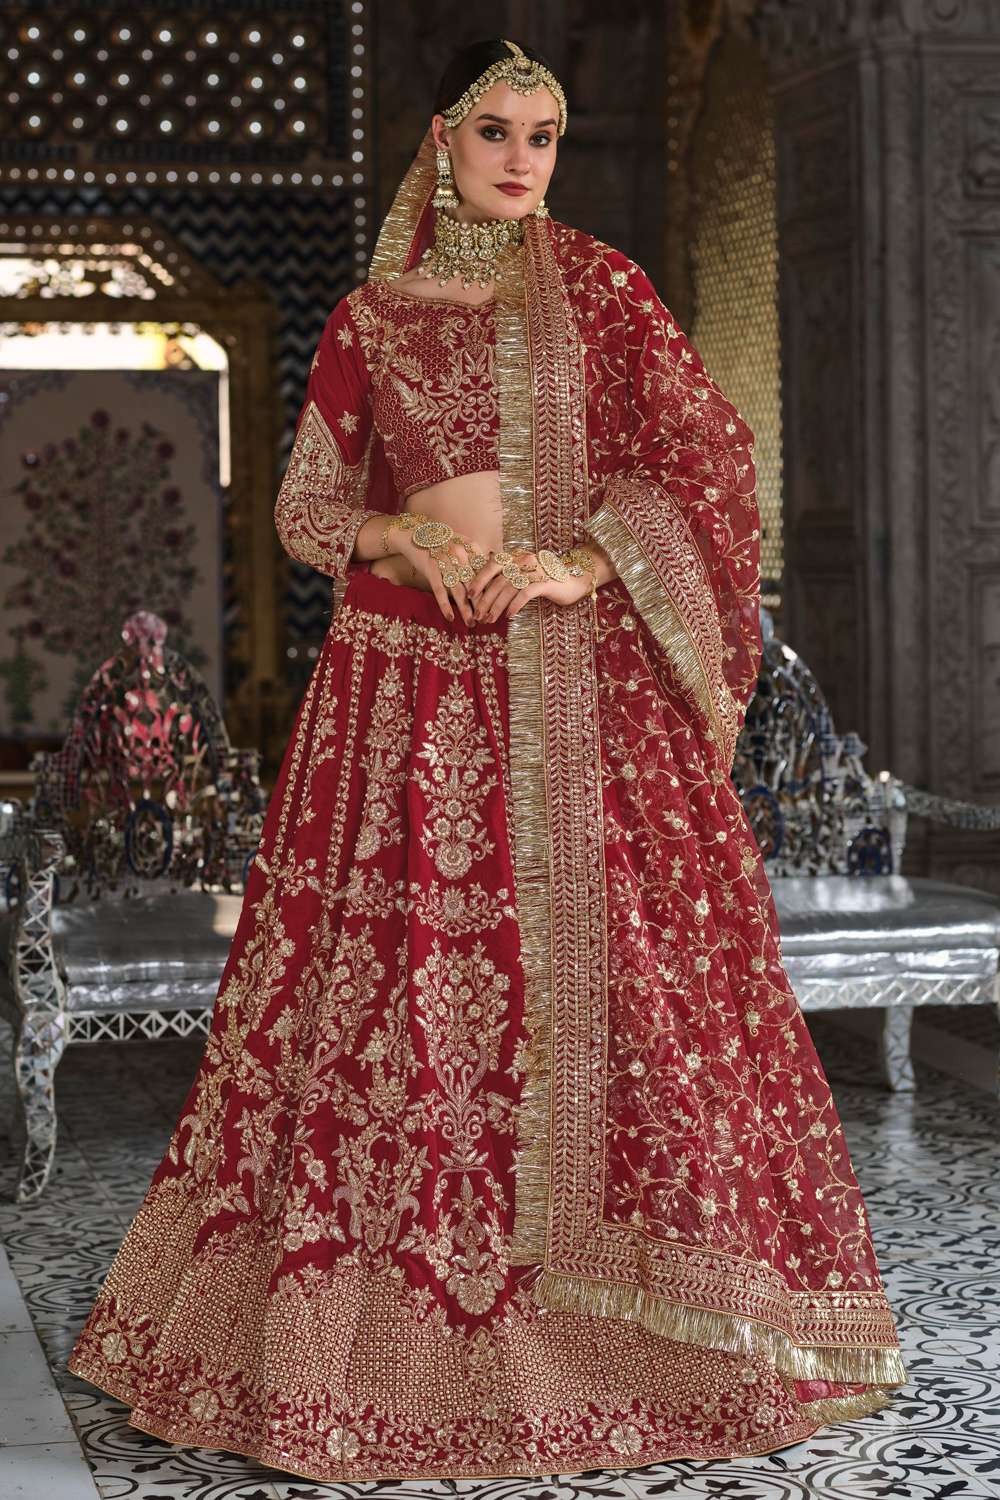 Royal Jaisalmer Wedding With A Dusty Pink Bridal Lehenga | Pink bridal  lehenga, Indian bride outfits, Latest bridal lehenga